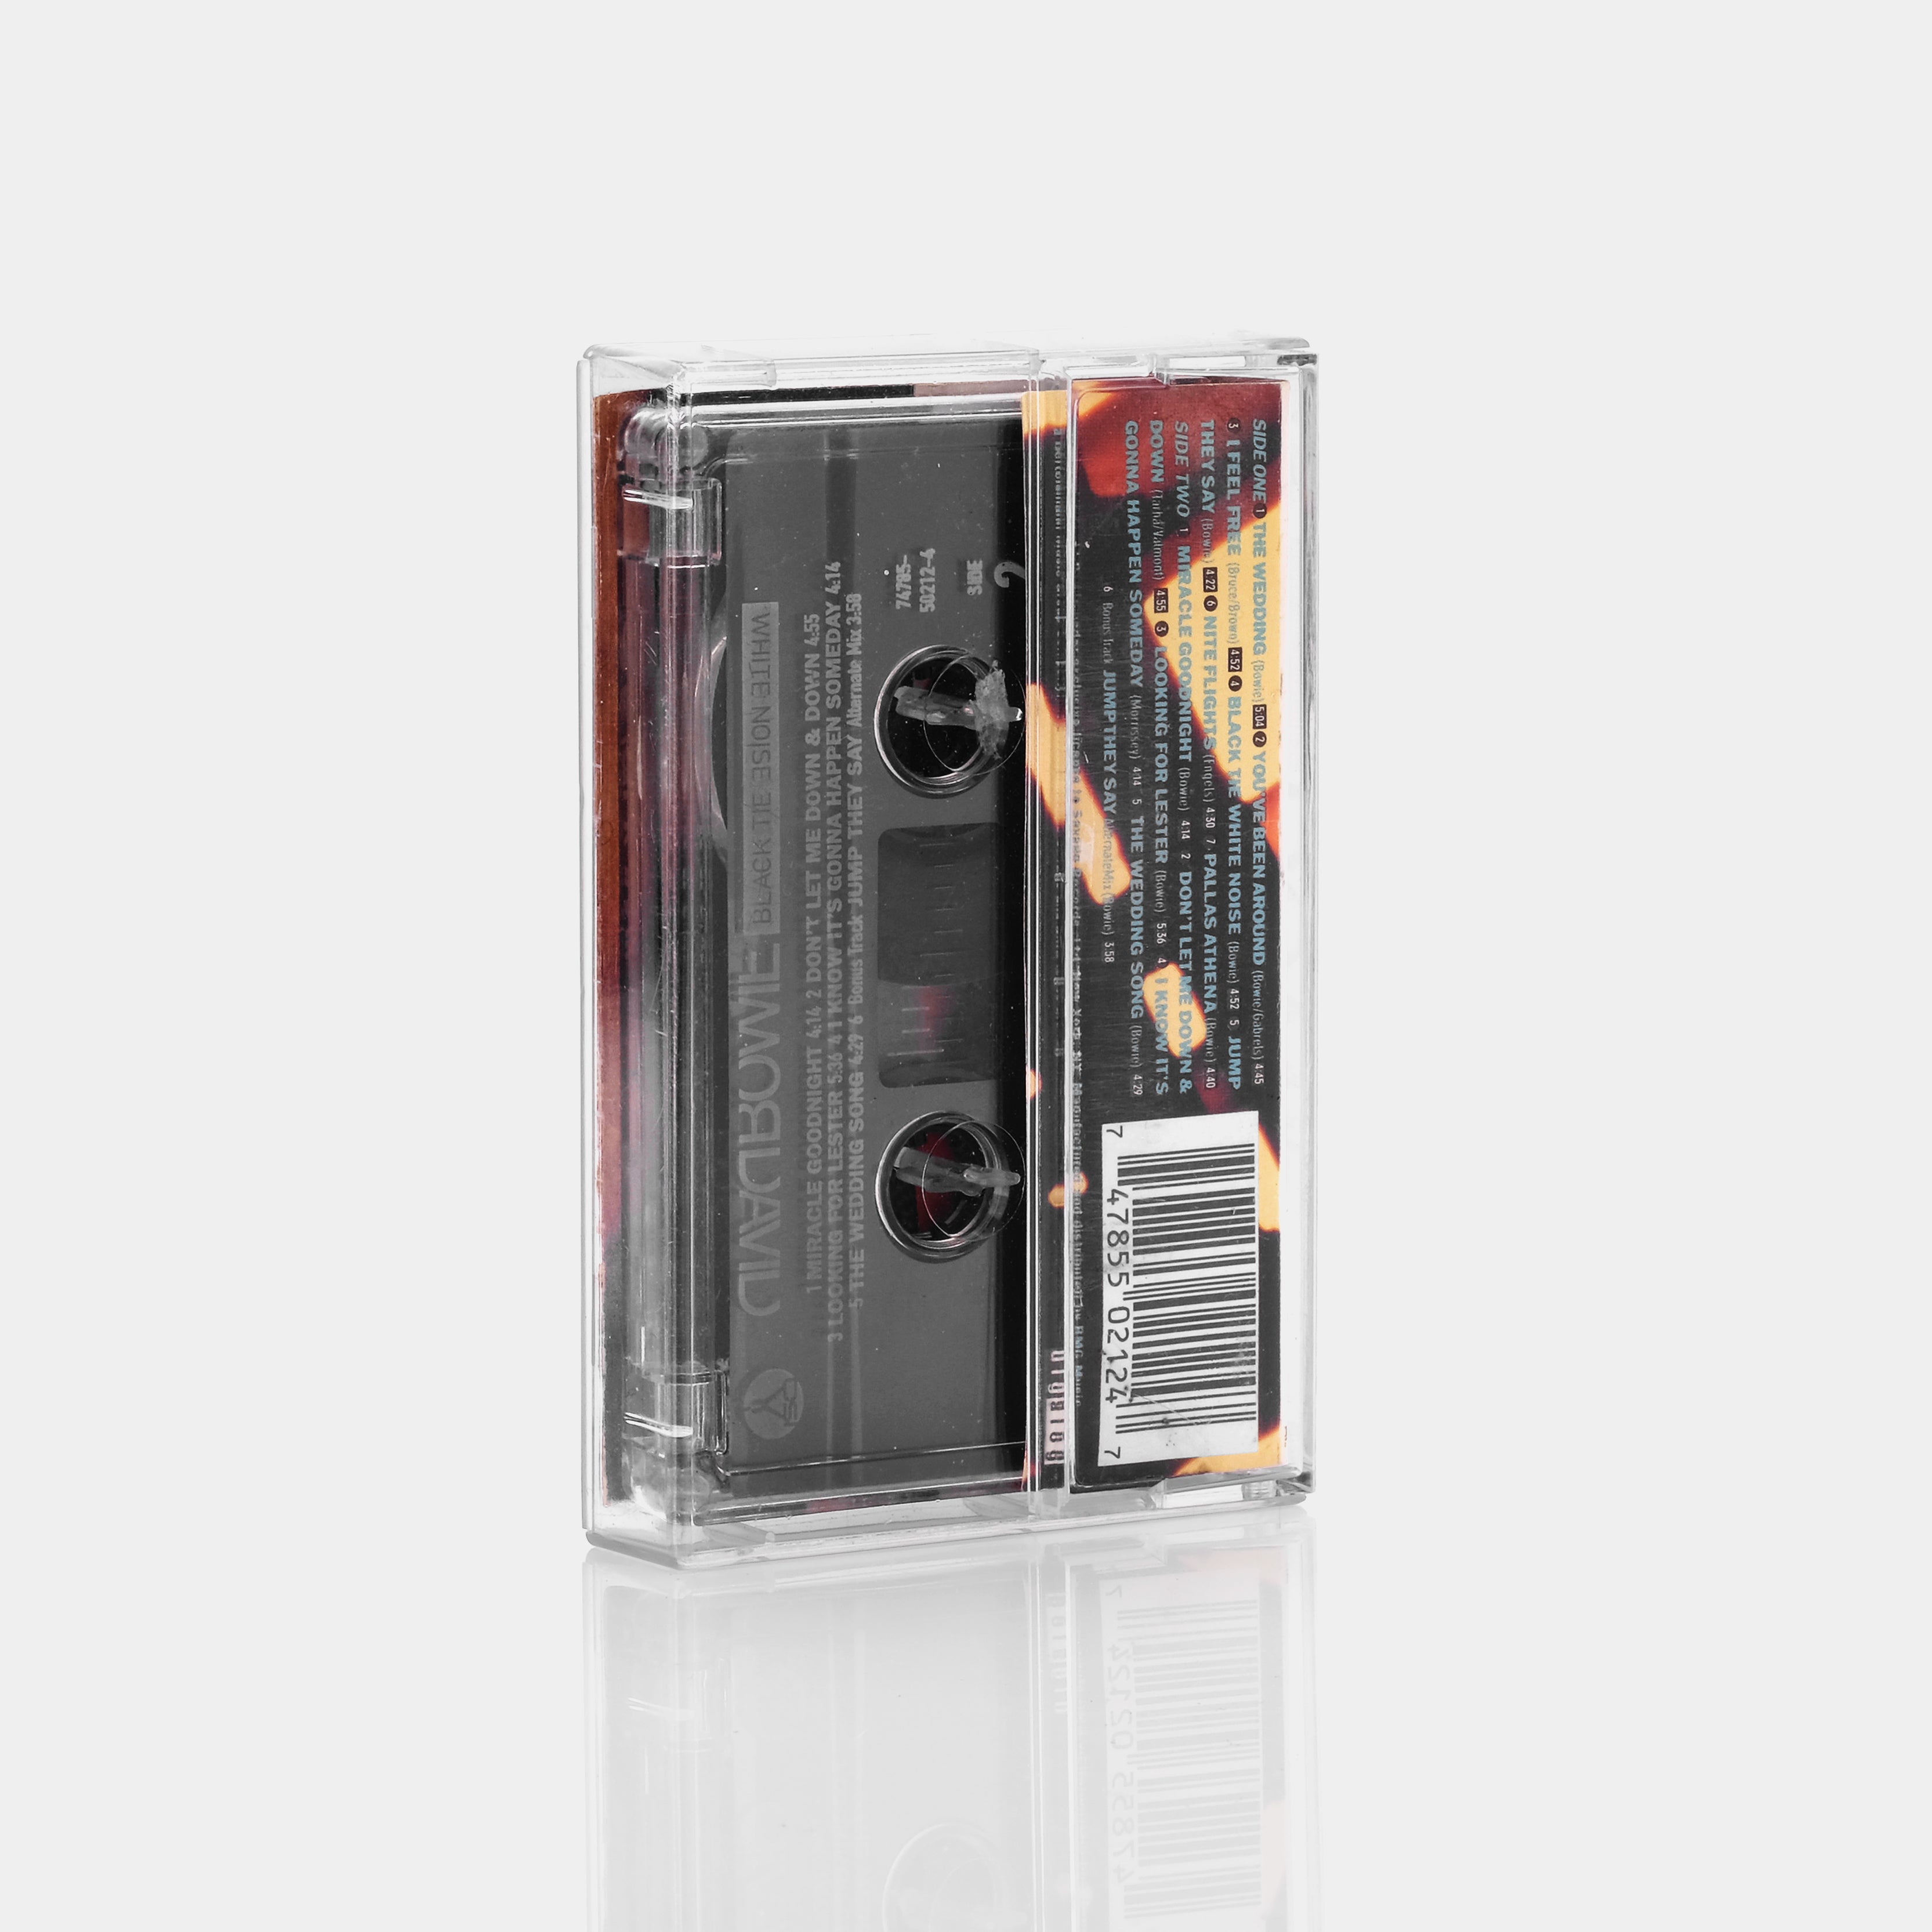 David Bowie - Black Tie White Noise Cassette Tape